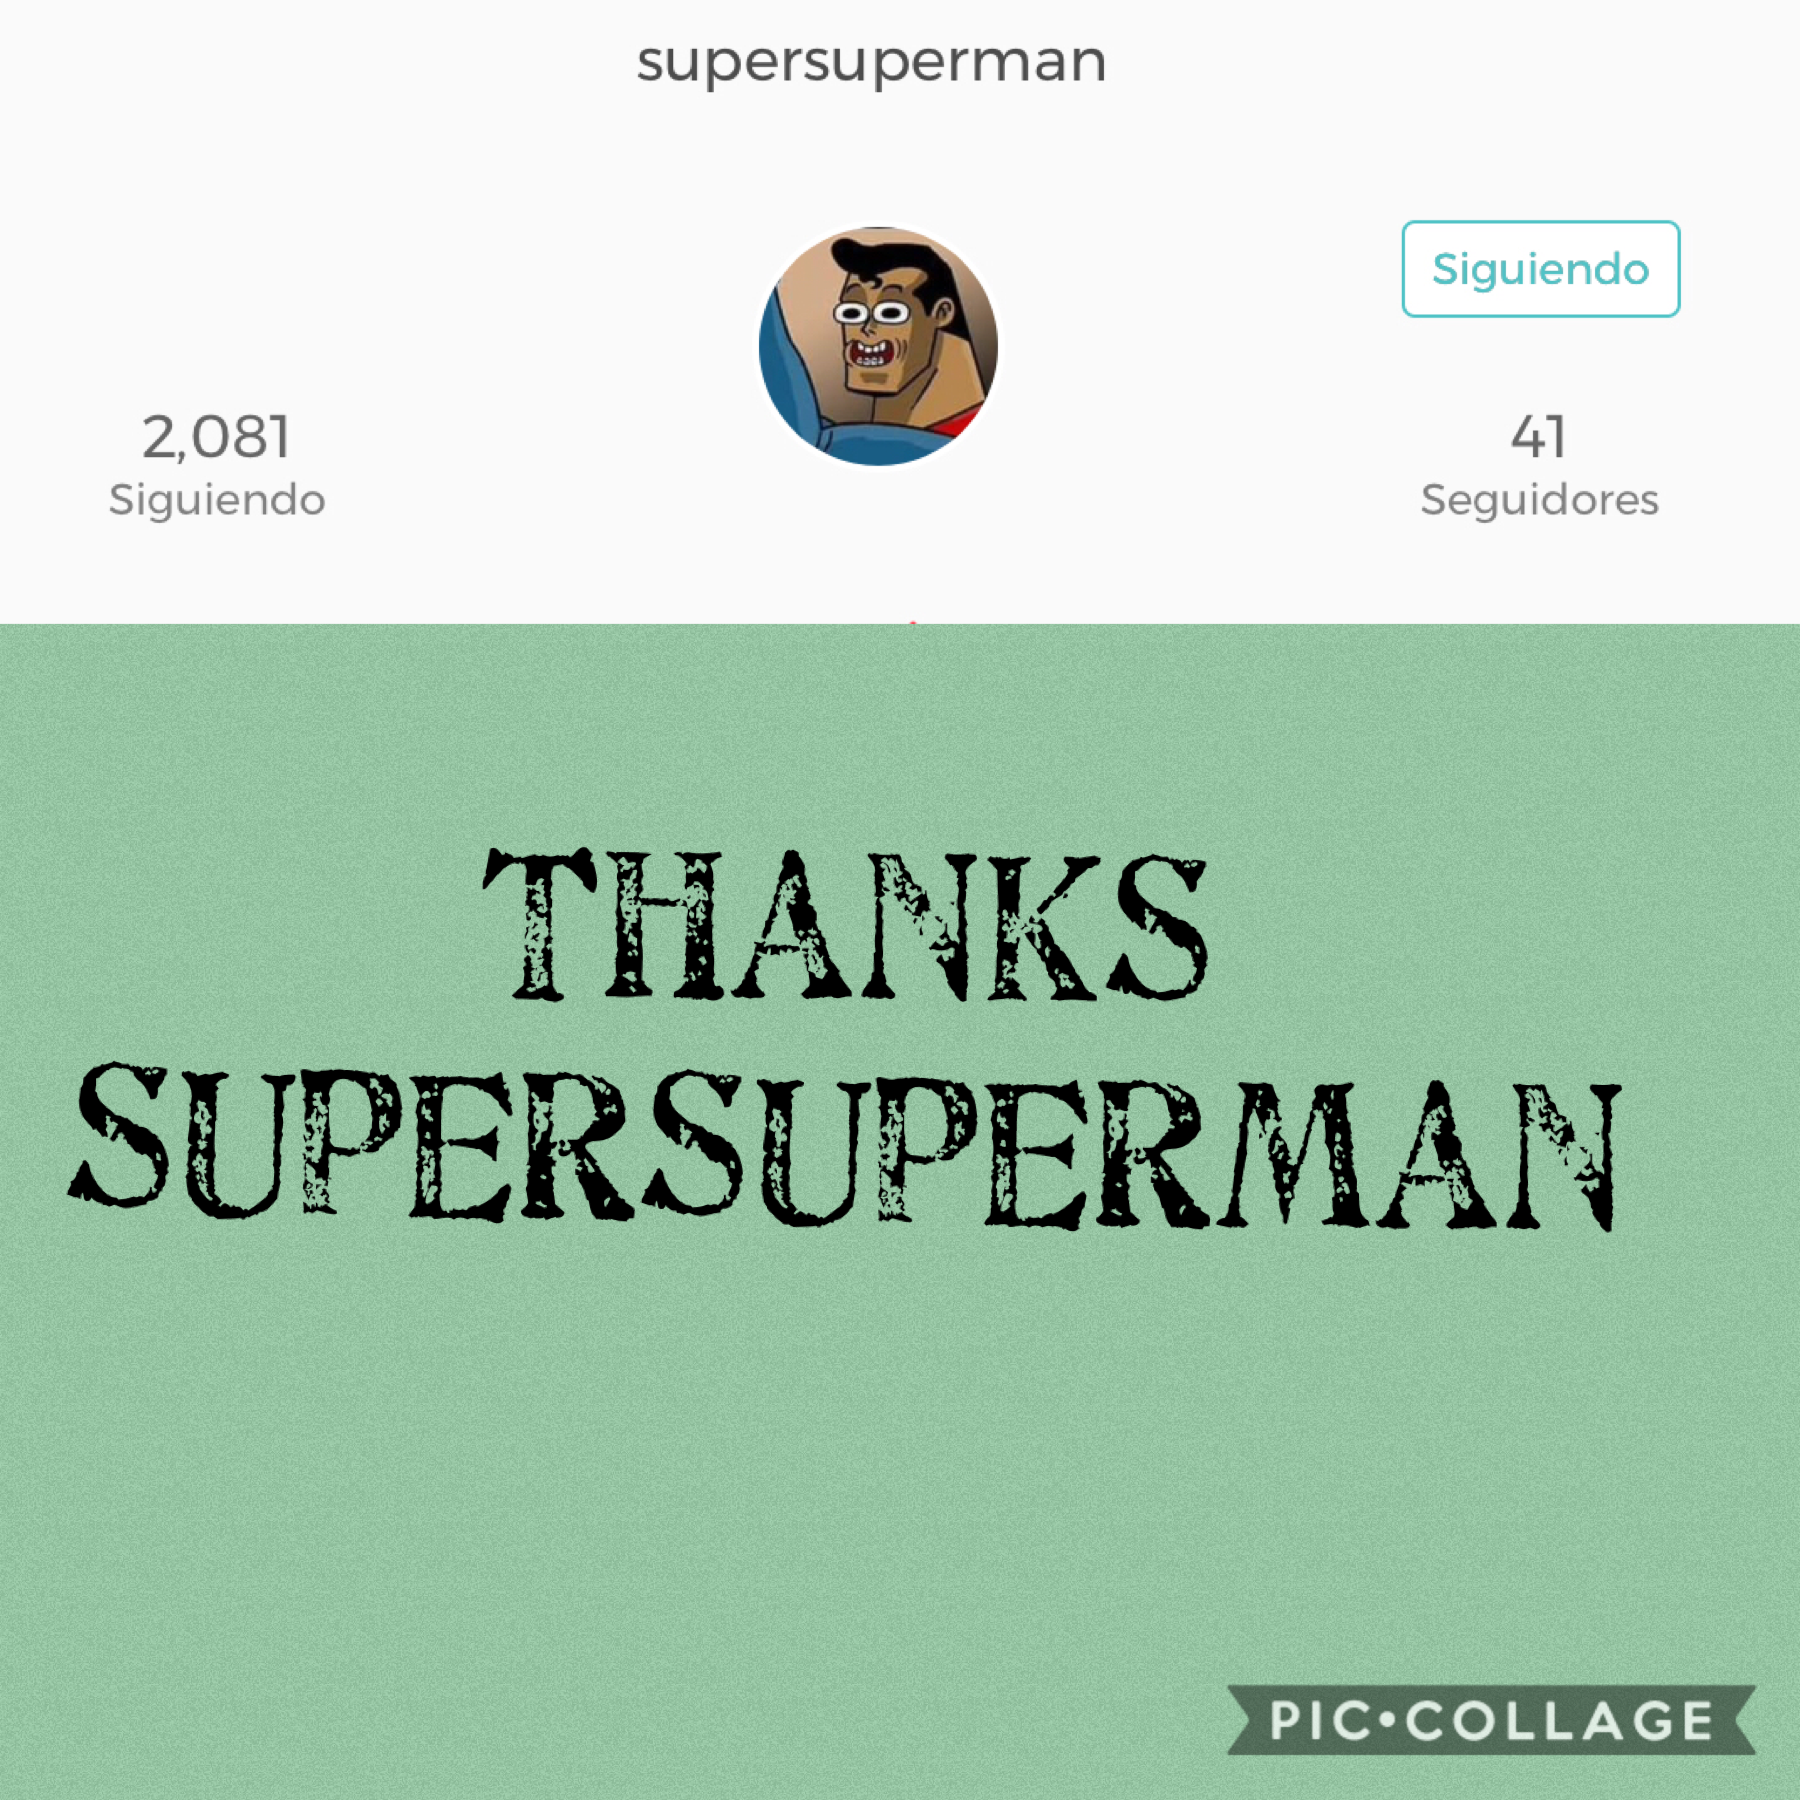 supersuperman